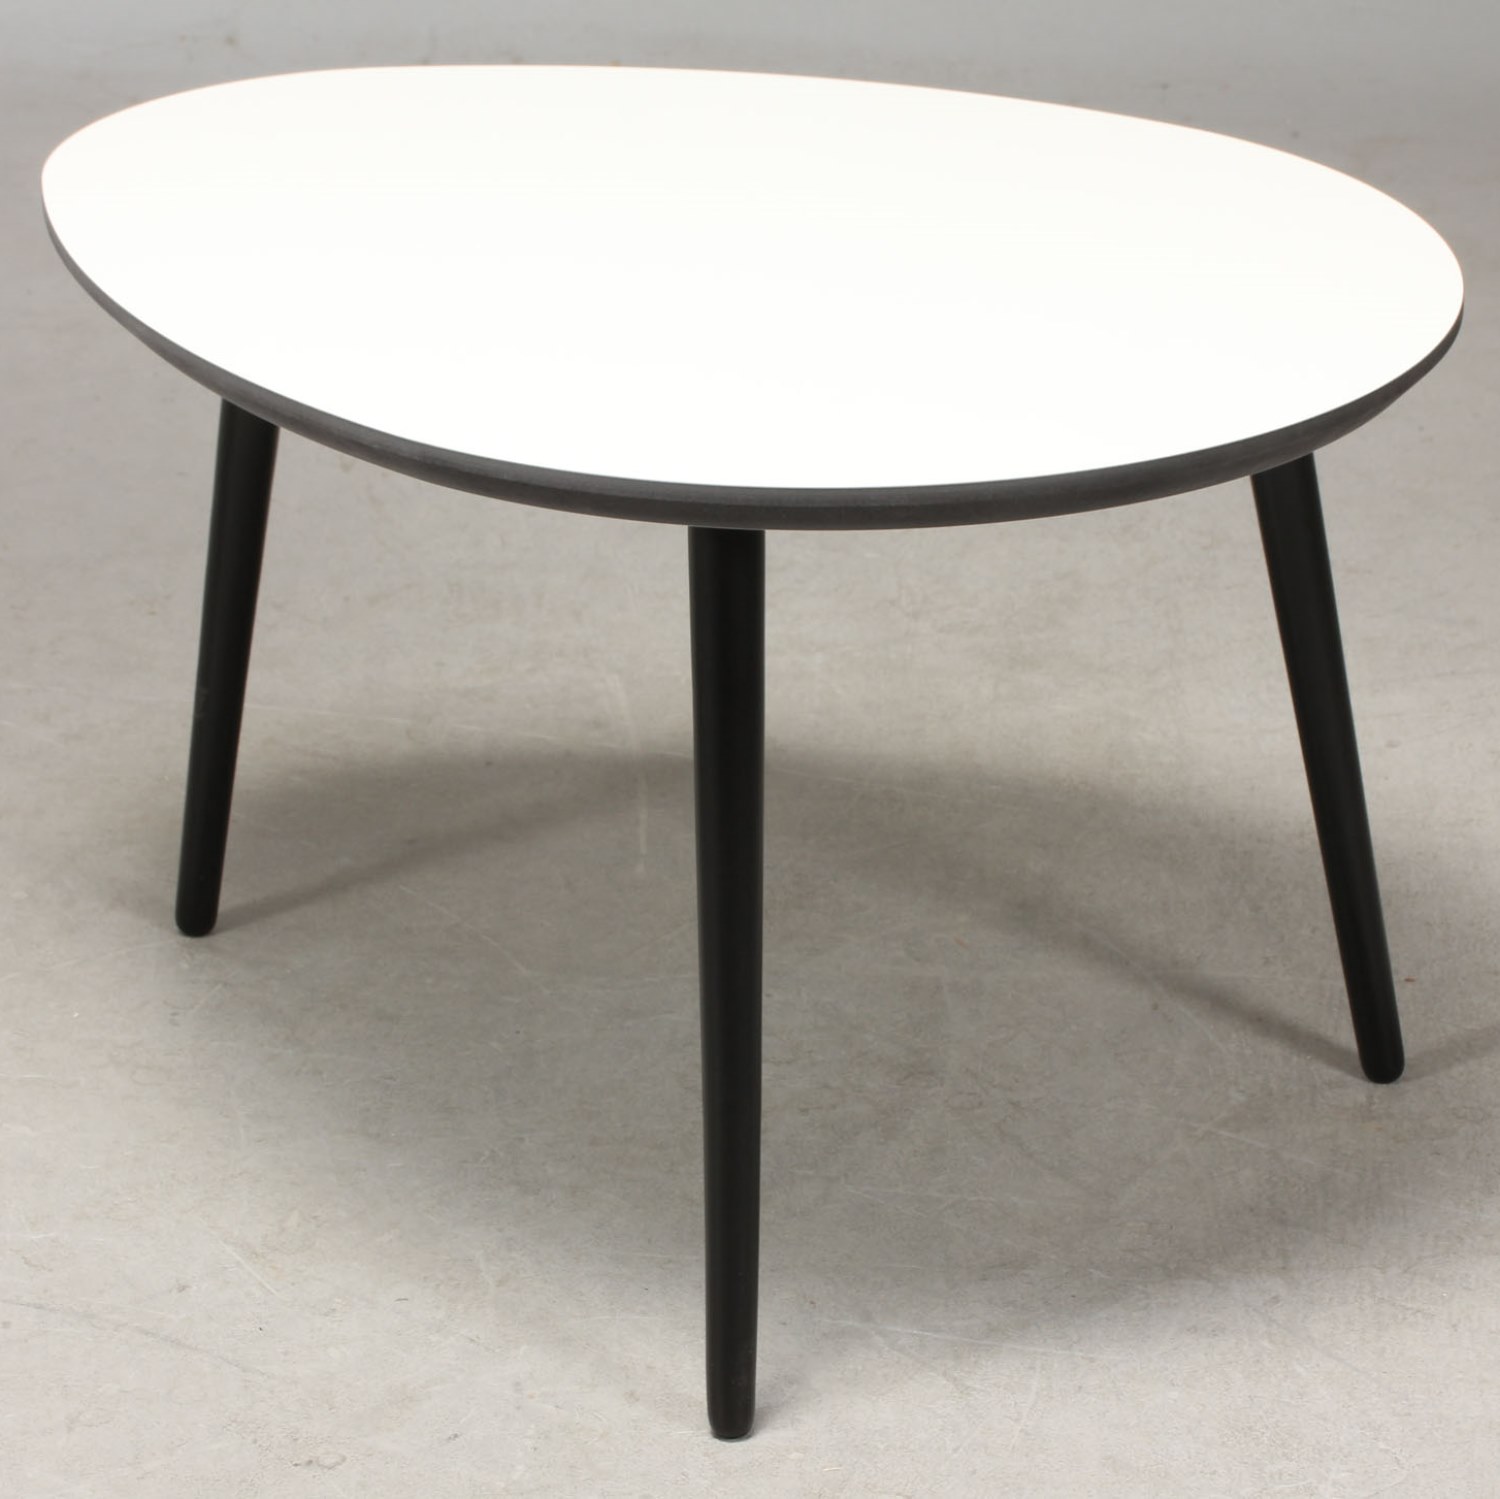 CT 20 - dråbeformet sofabord i hvid laminat med sorte træben, 3 størrelser. 107 x 79 cm Højde 45 cm